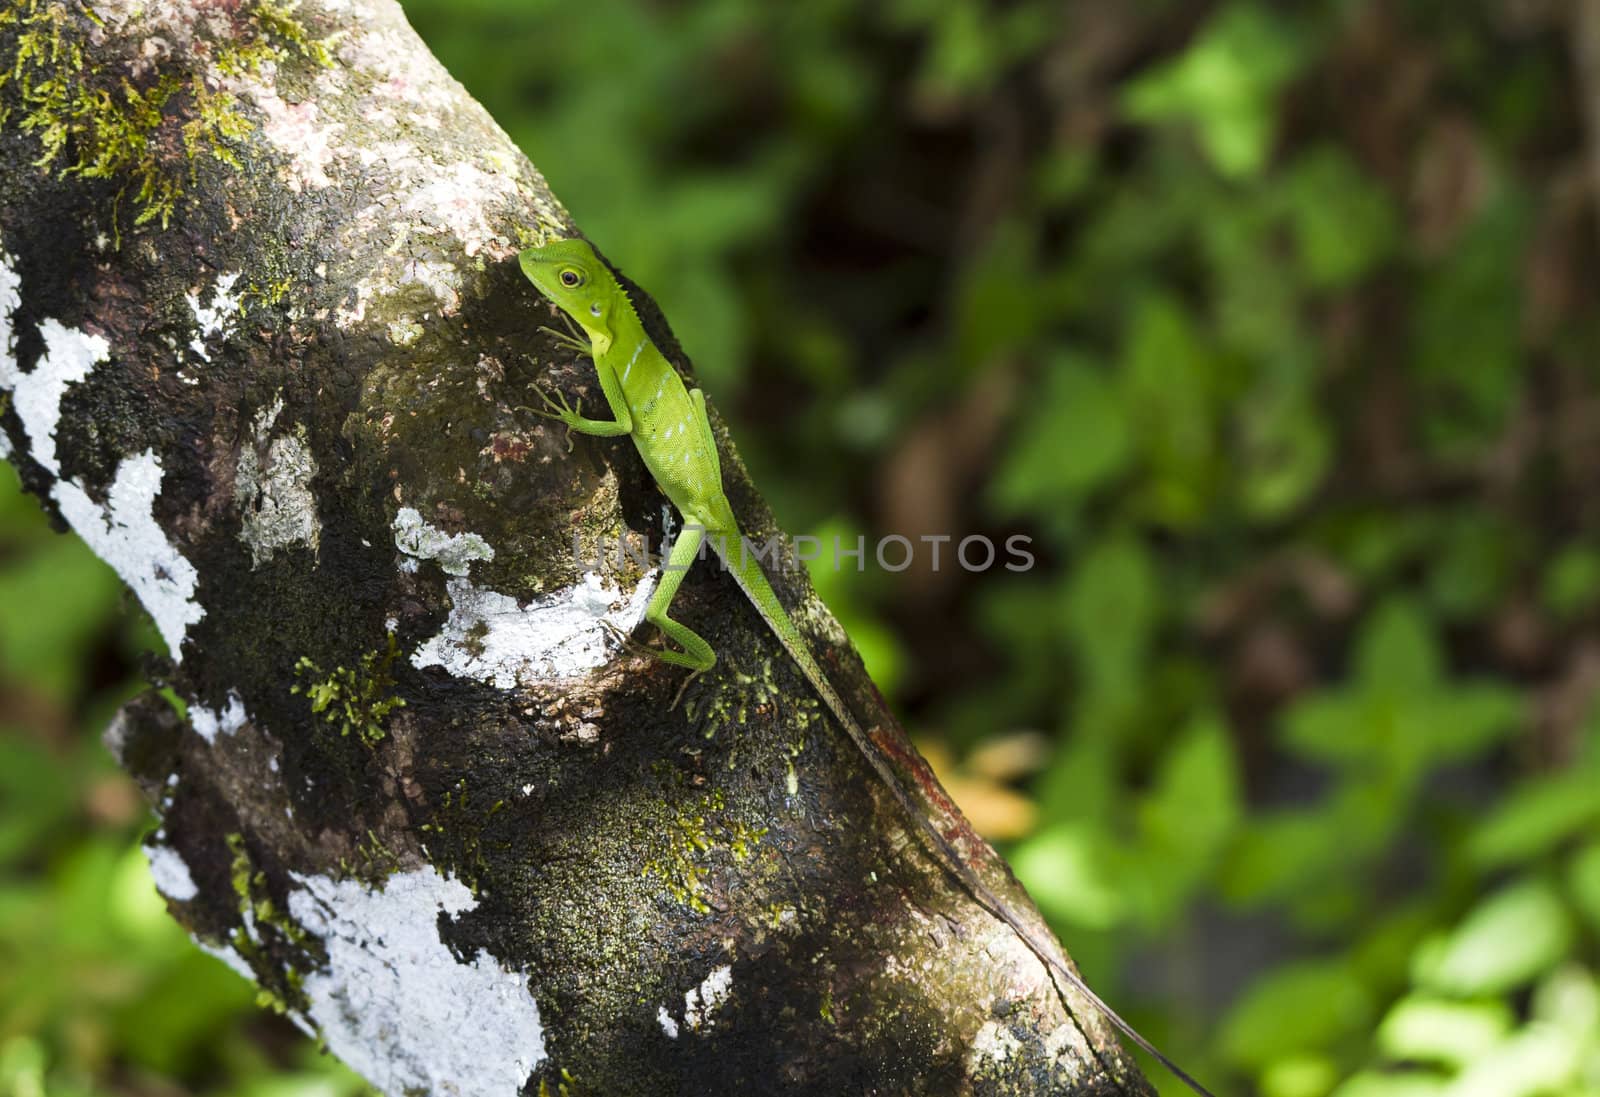 Green Lizard by azamshah72